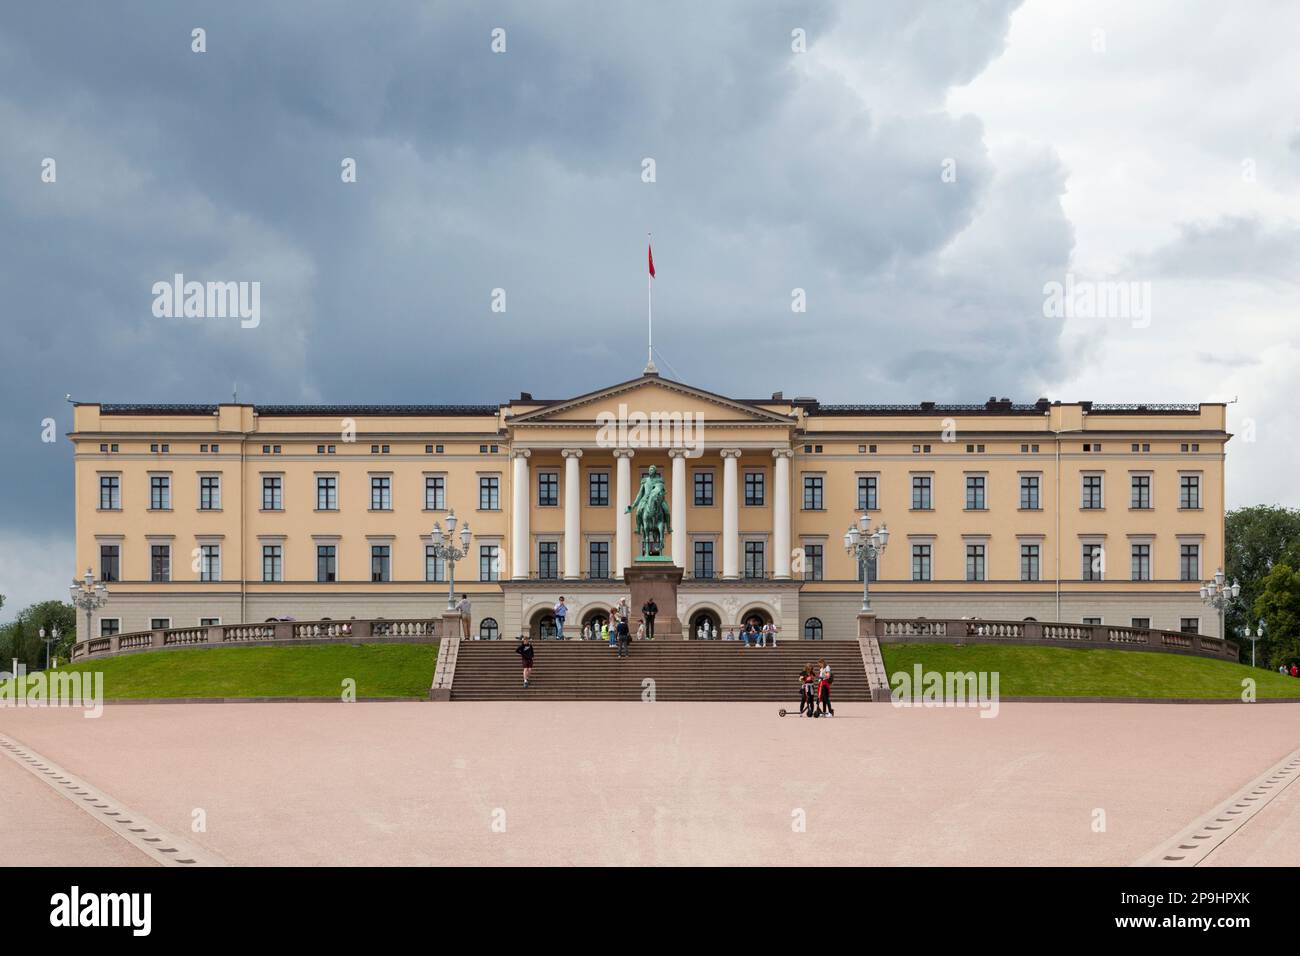 Oslo, Norvegia - Giugno 26 2019: Il Palazzo reale (norvegese: Slottet o formalmente Det kongelige slott) è stato costruito nella prima metà del 19th ° secolo AS Foto Stock